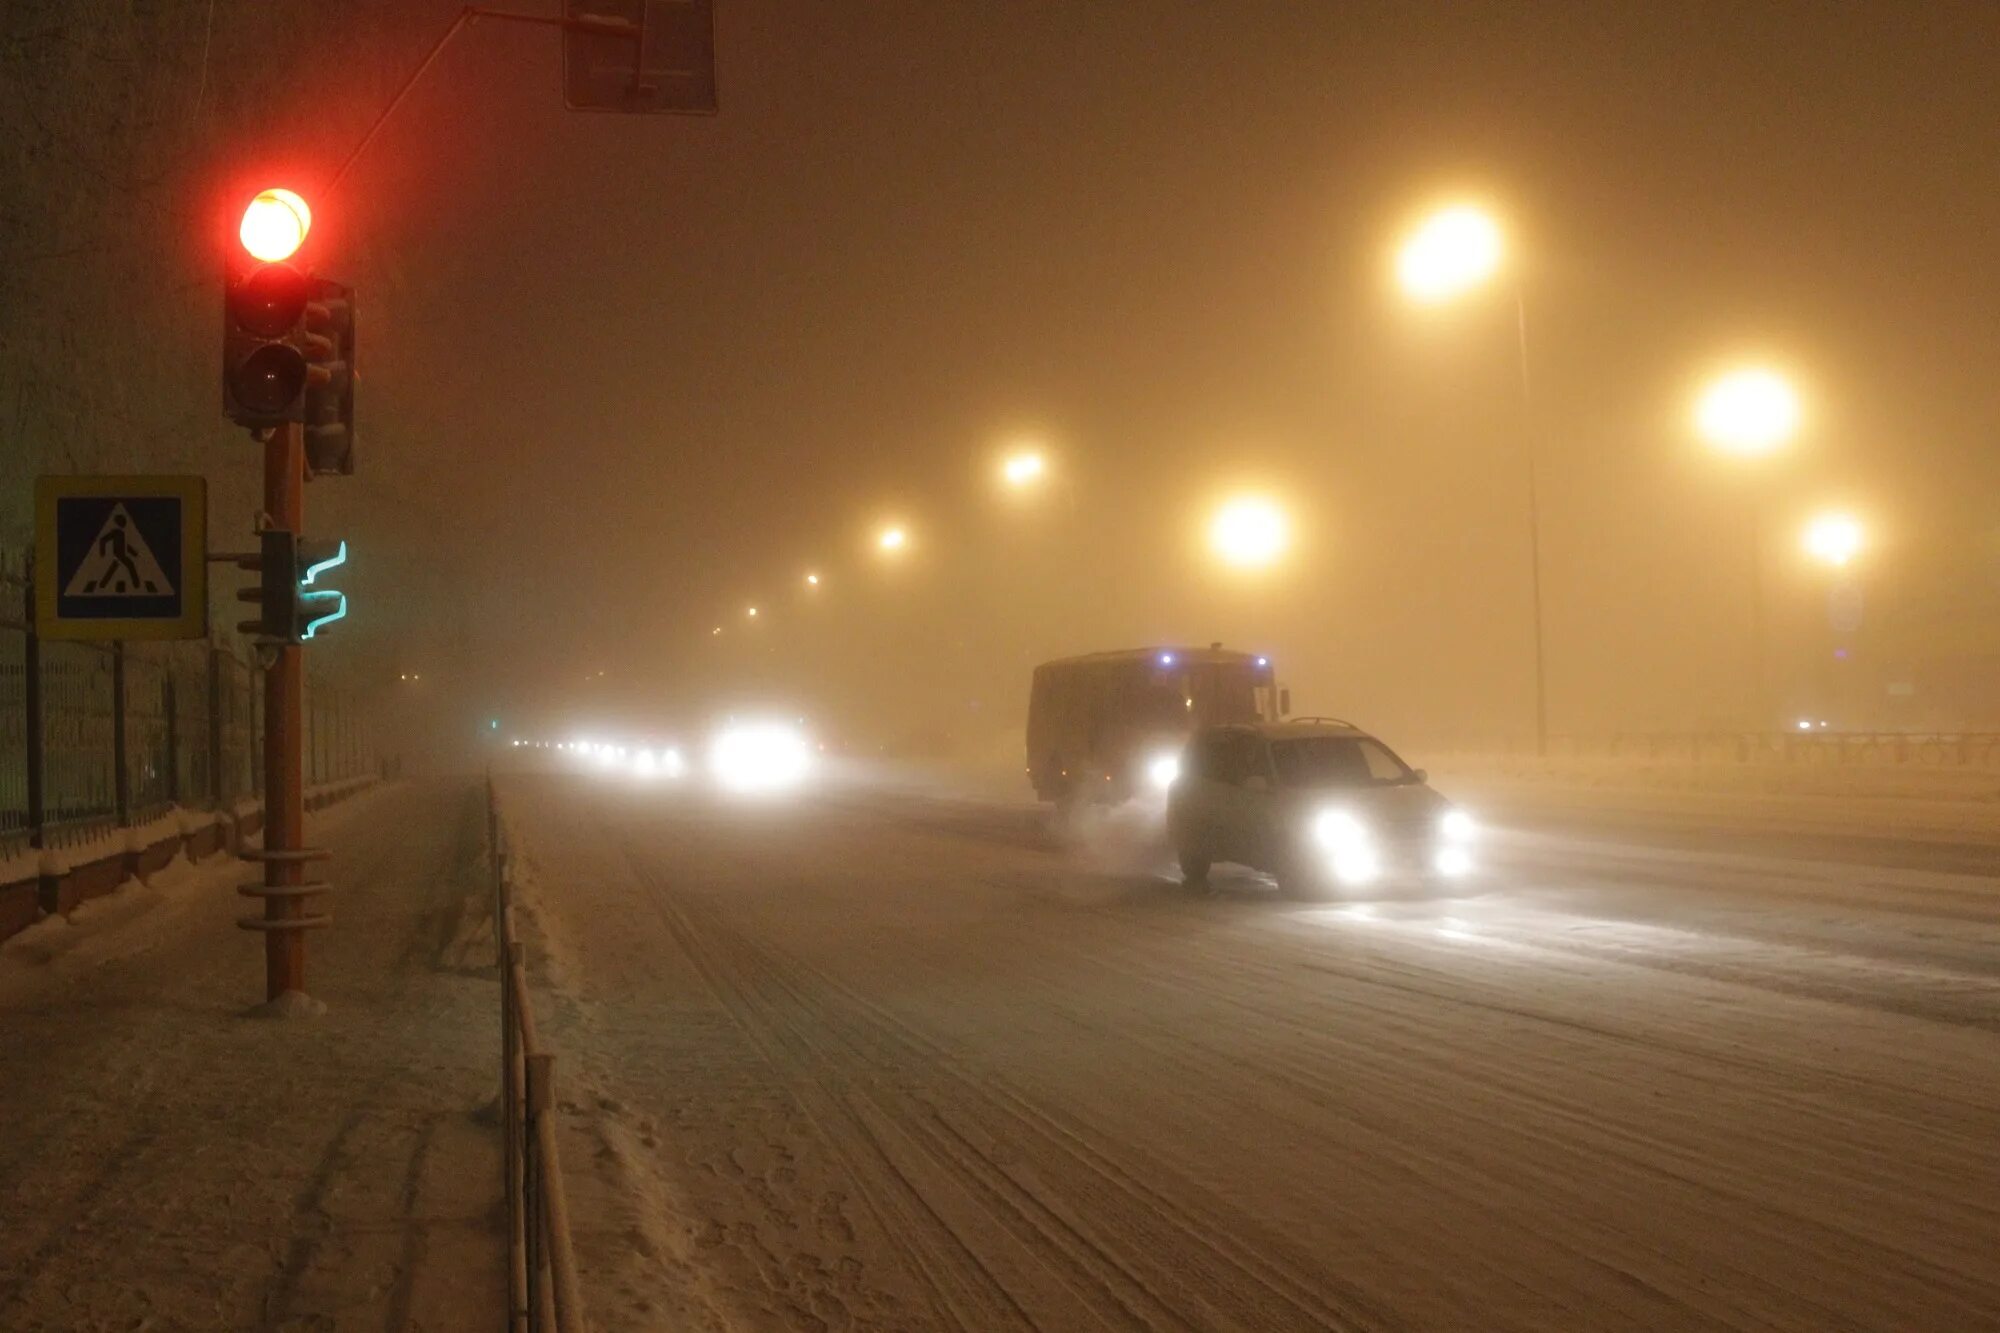 Сильный туман на дороге. Плохая видимость на дороге. Туман зимой на дороге. Недостаточная видимость. Плохо видимый в тумане